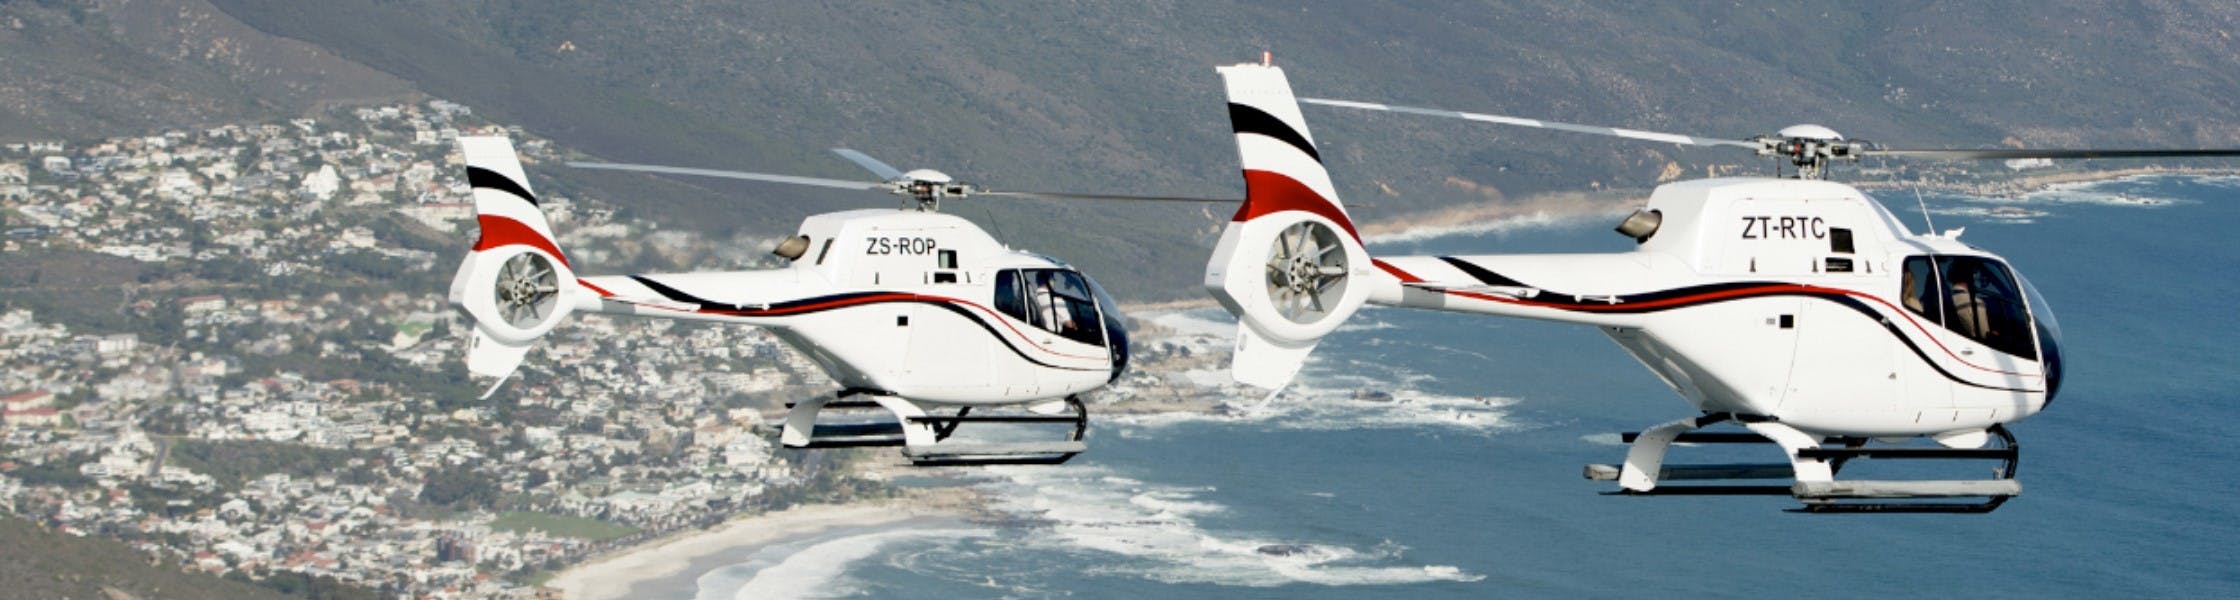 Kaapstad Twelve Apostles 16 minuten durende helikoptervlucht